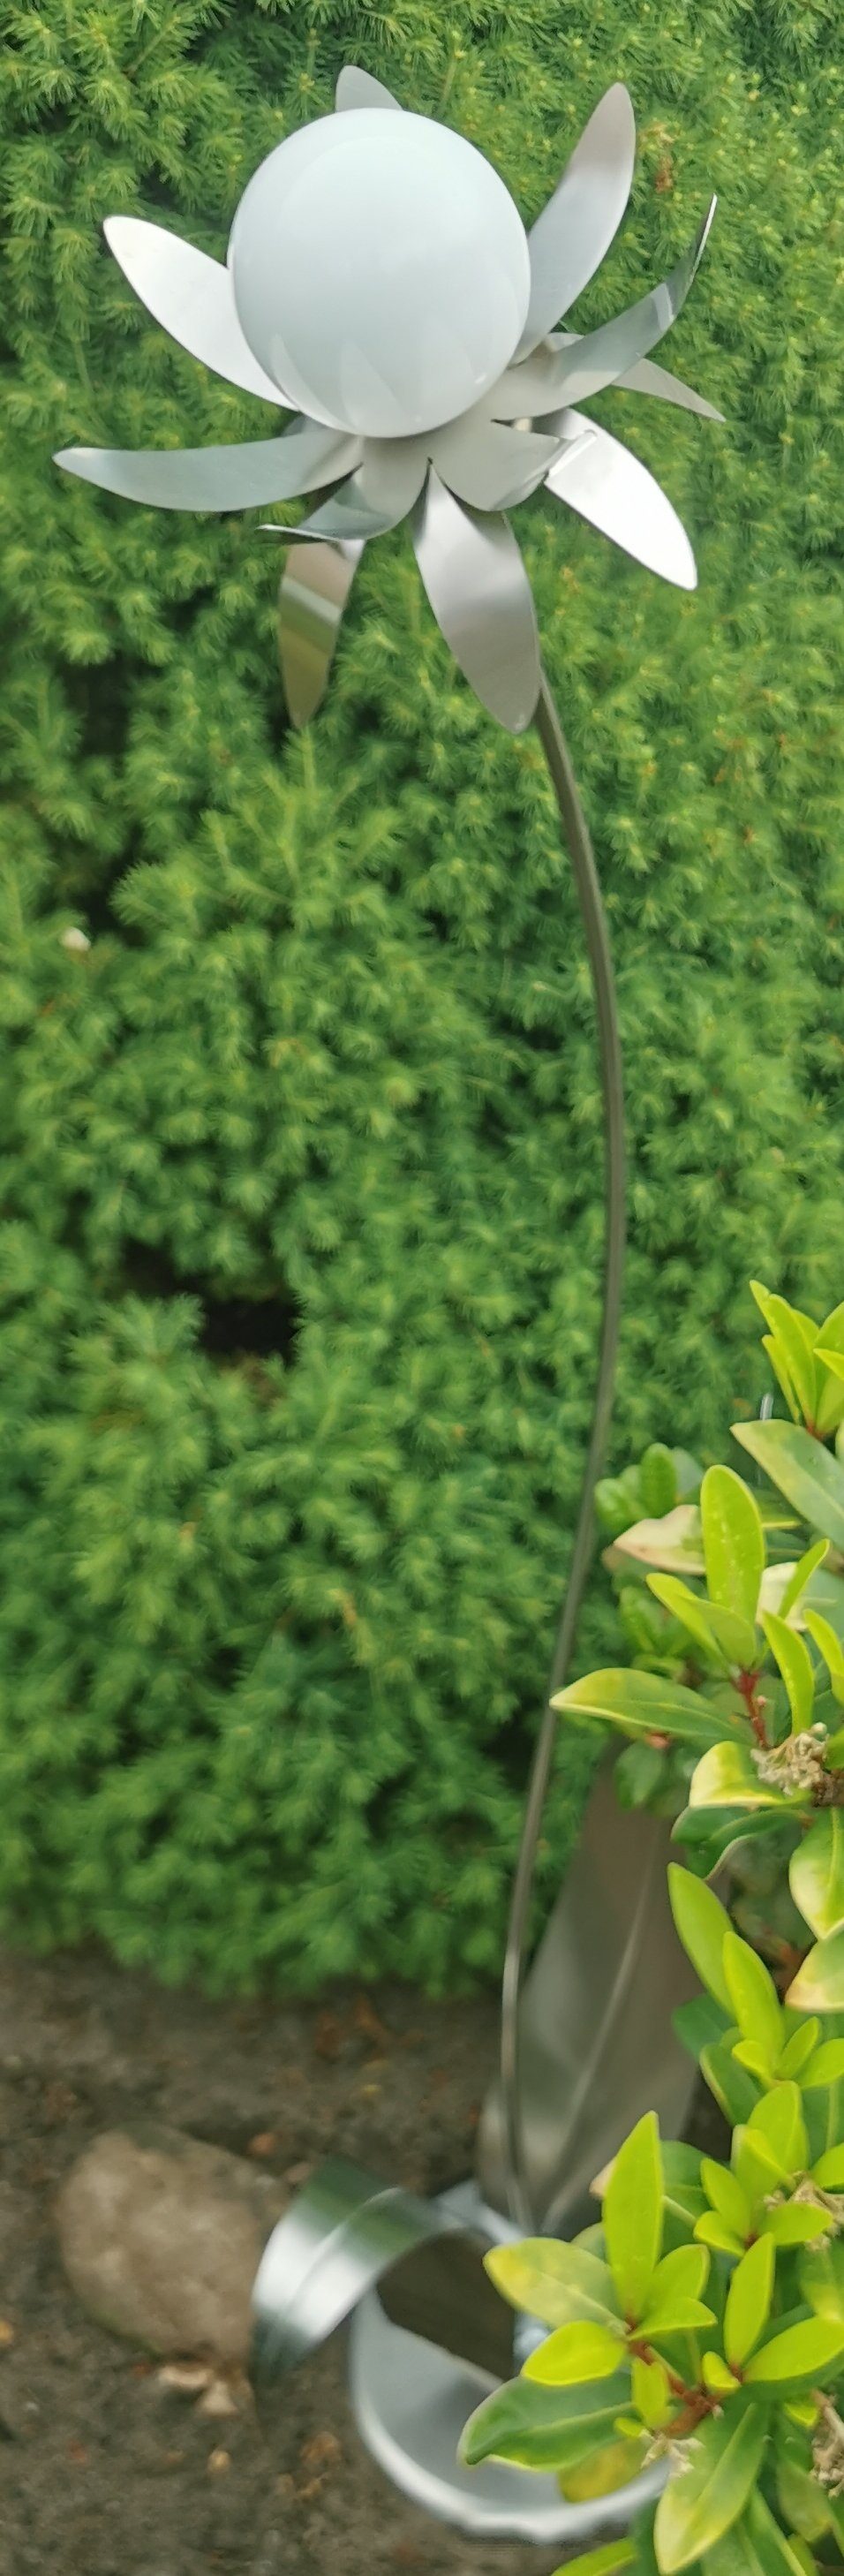 Jürgen Bocker Garten-Ambiente Kugel Blume Edelstahl weiß 120cm poliert Palermo Skulptur Gartenstecker